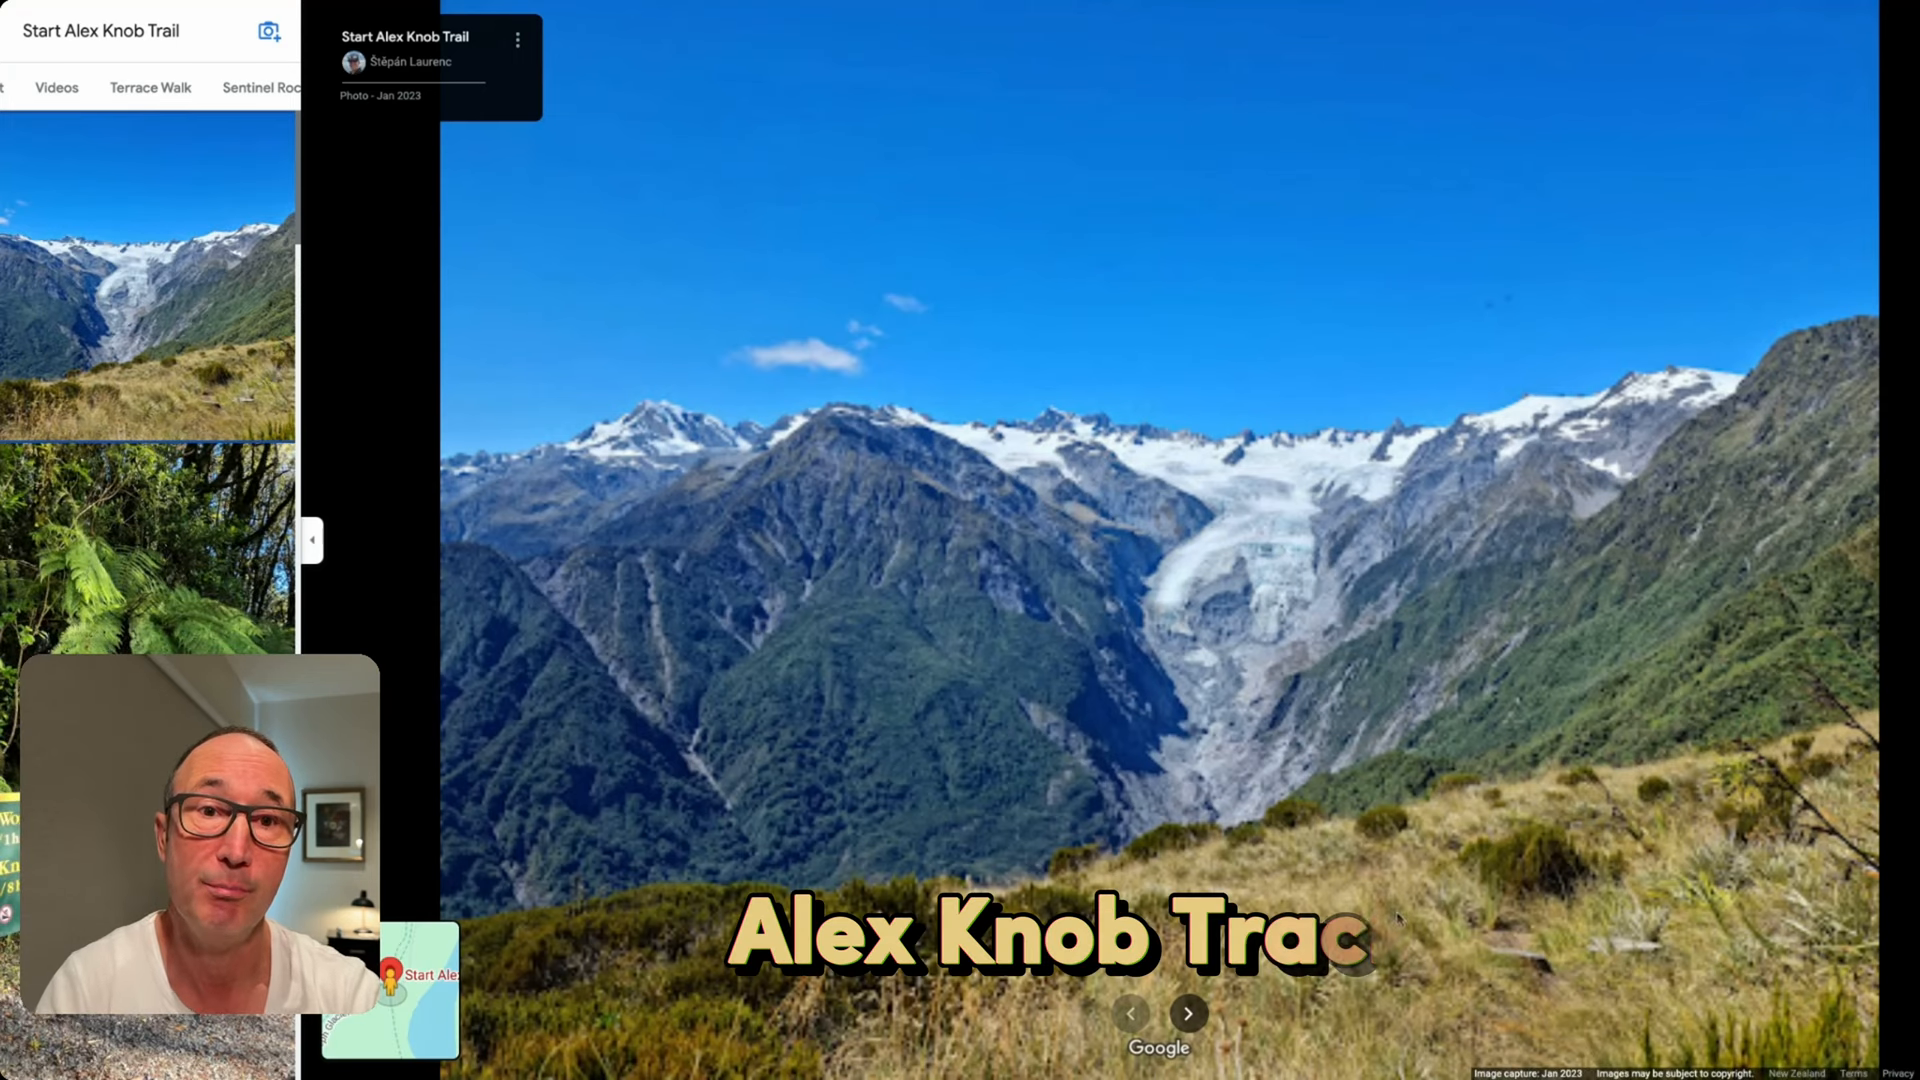 Alex Knob hiking trail near Franz Josef village